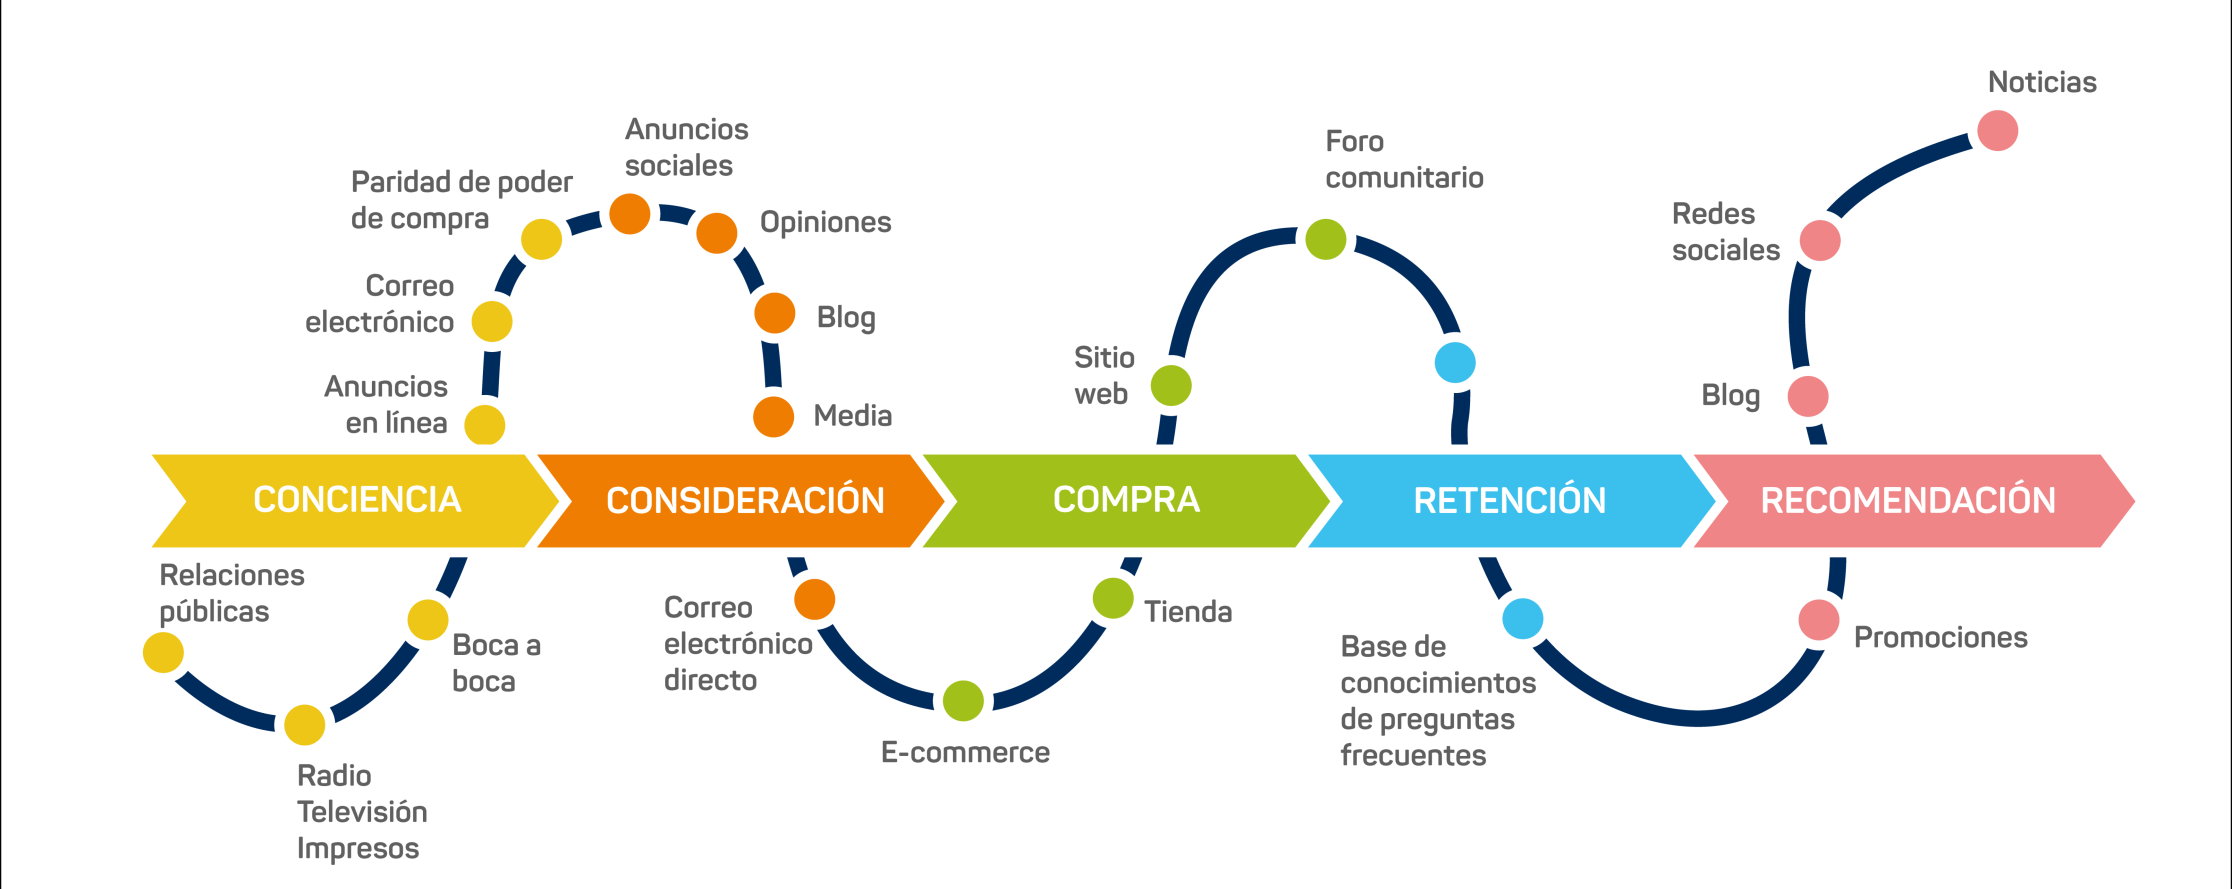 Diagrama del Customer Journey con las etapas de Conciencia, Consideración, Compra, Retención y Recomendación, mostrando diversos canales de marketing.